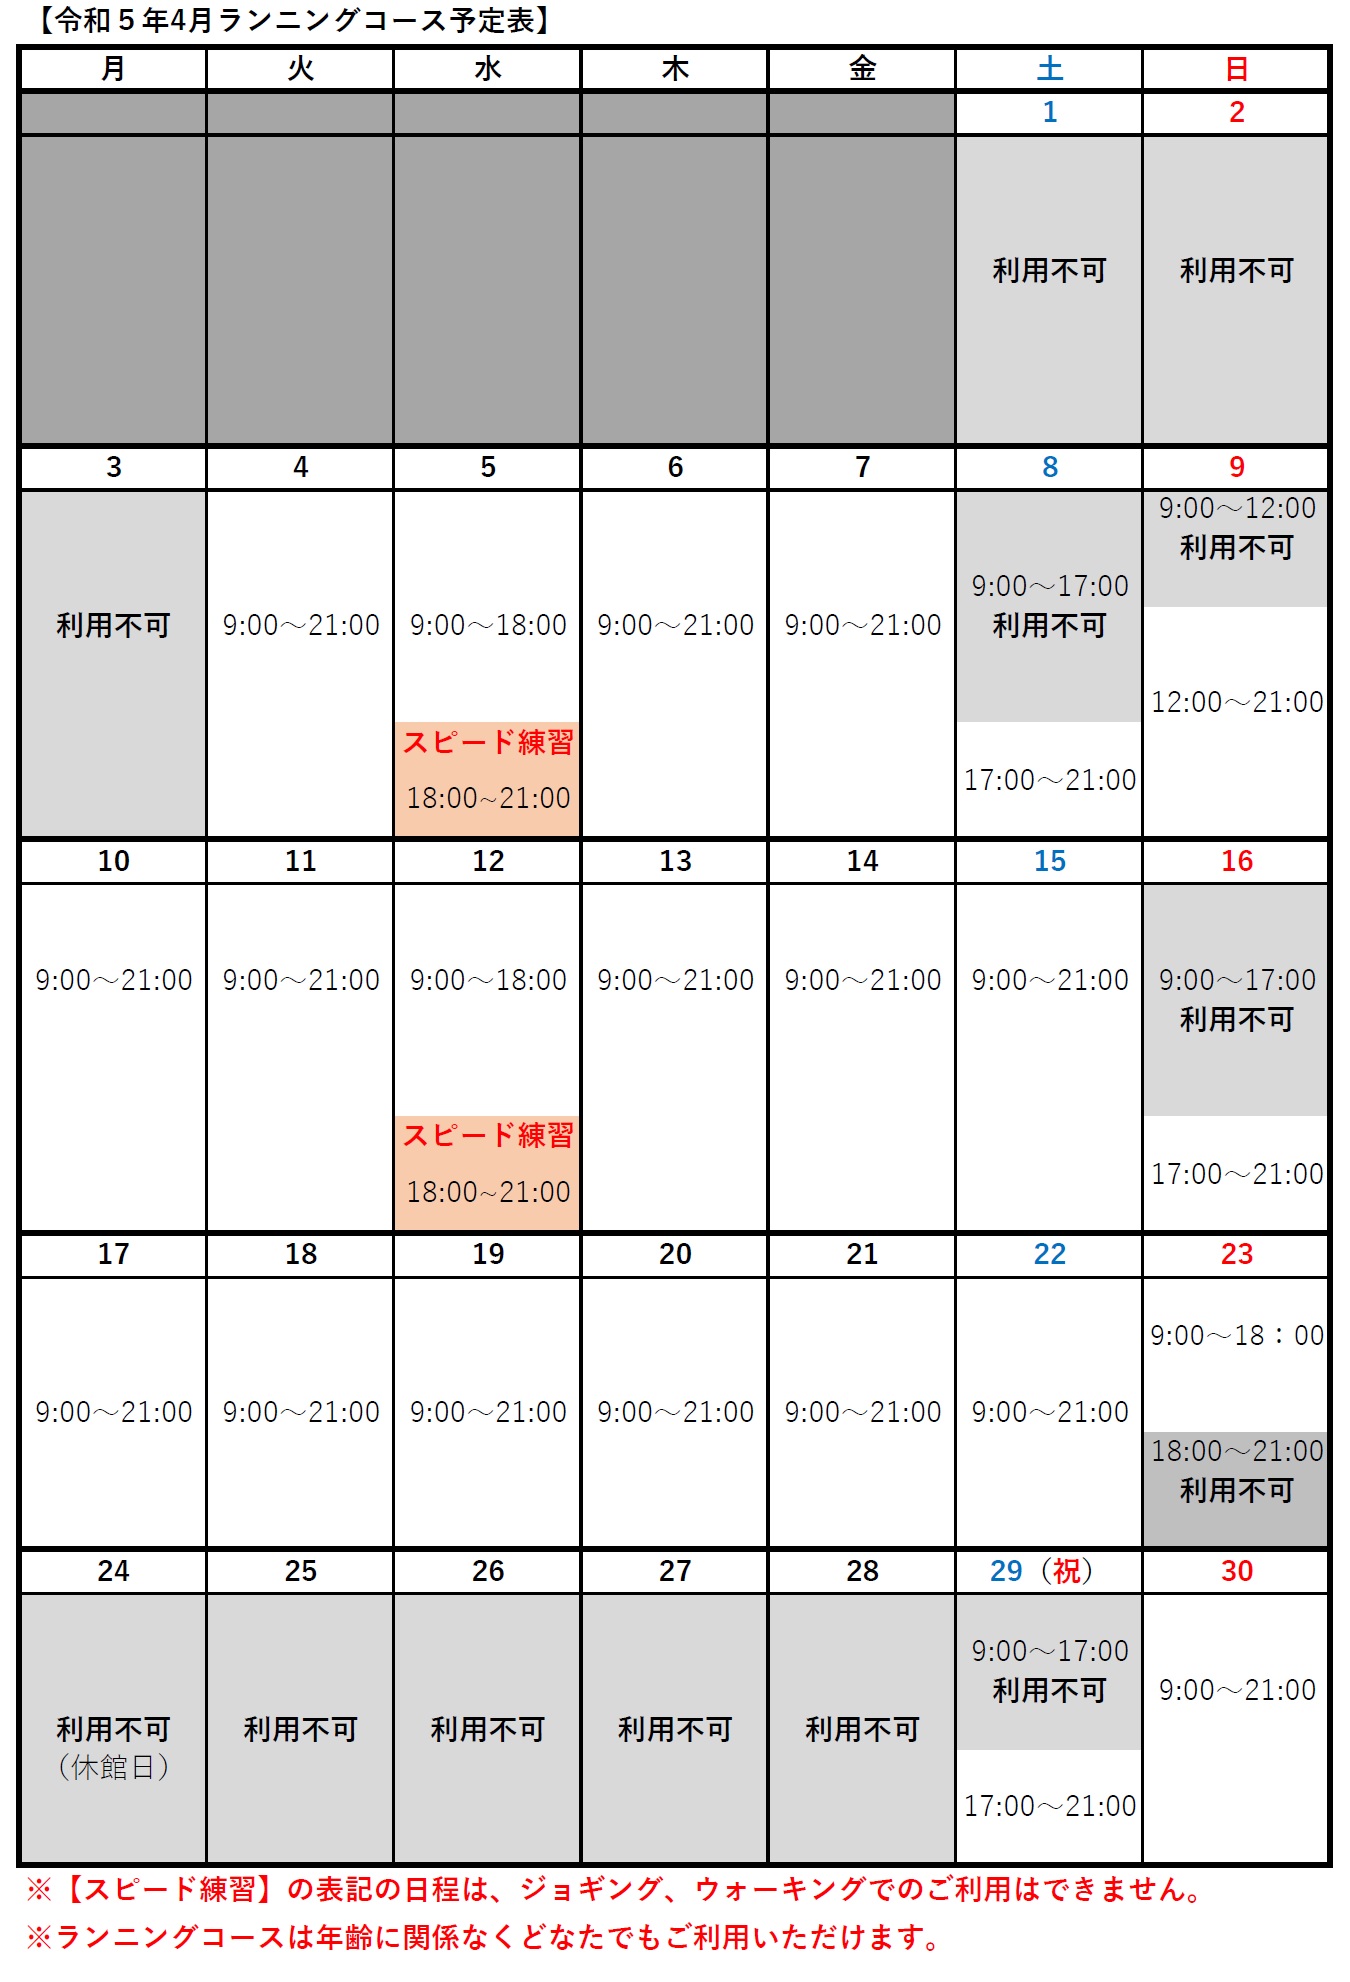 令和5年4月札幌市スポーツ交流施設(つどーむ)のランニングコース利用方法について画像